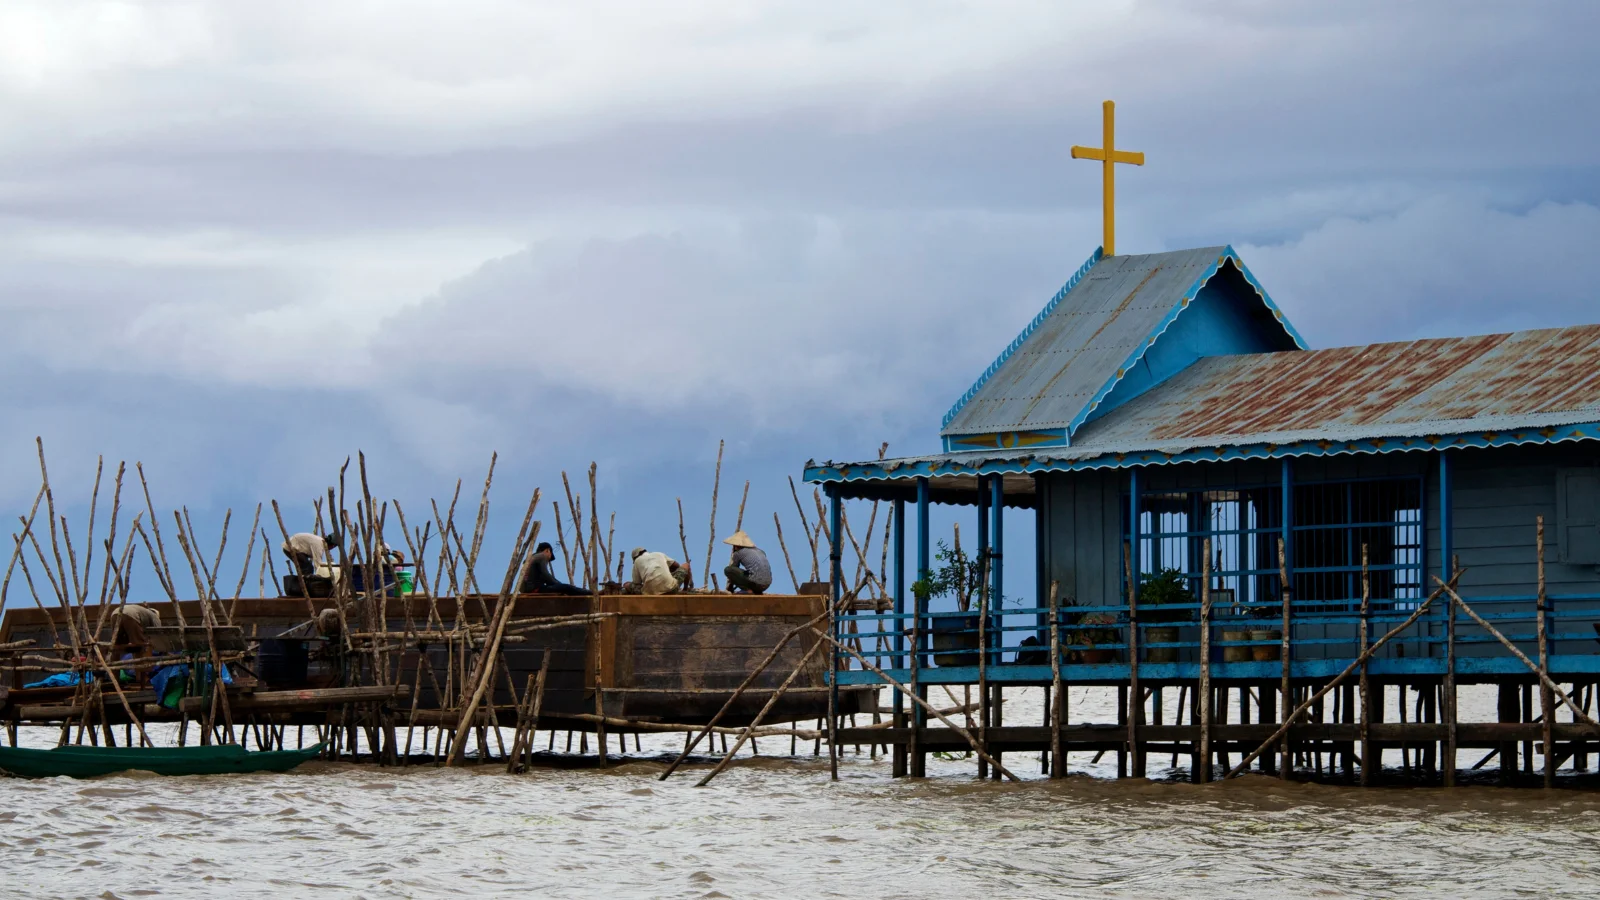 Prédio da igreja à beira do rio em um vilarejo próximo a Siem Reap, Camboja.